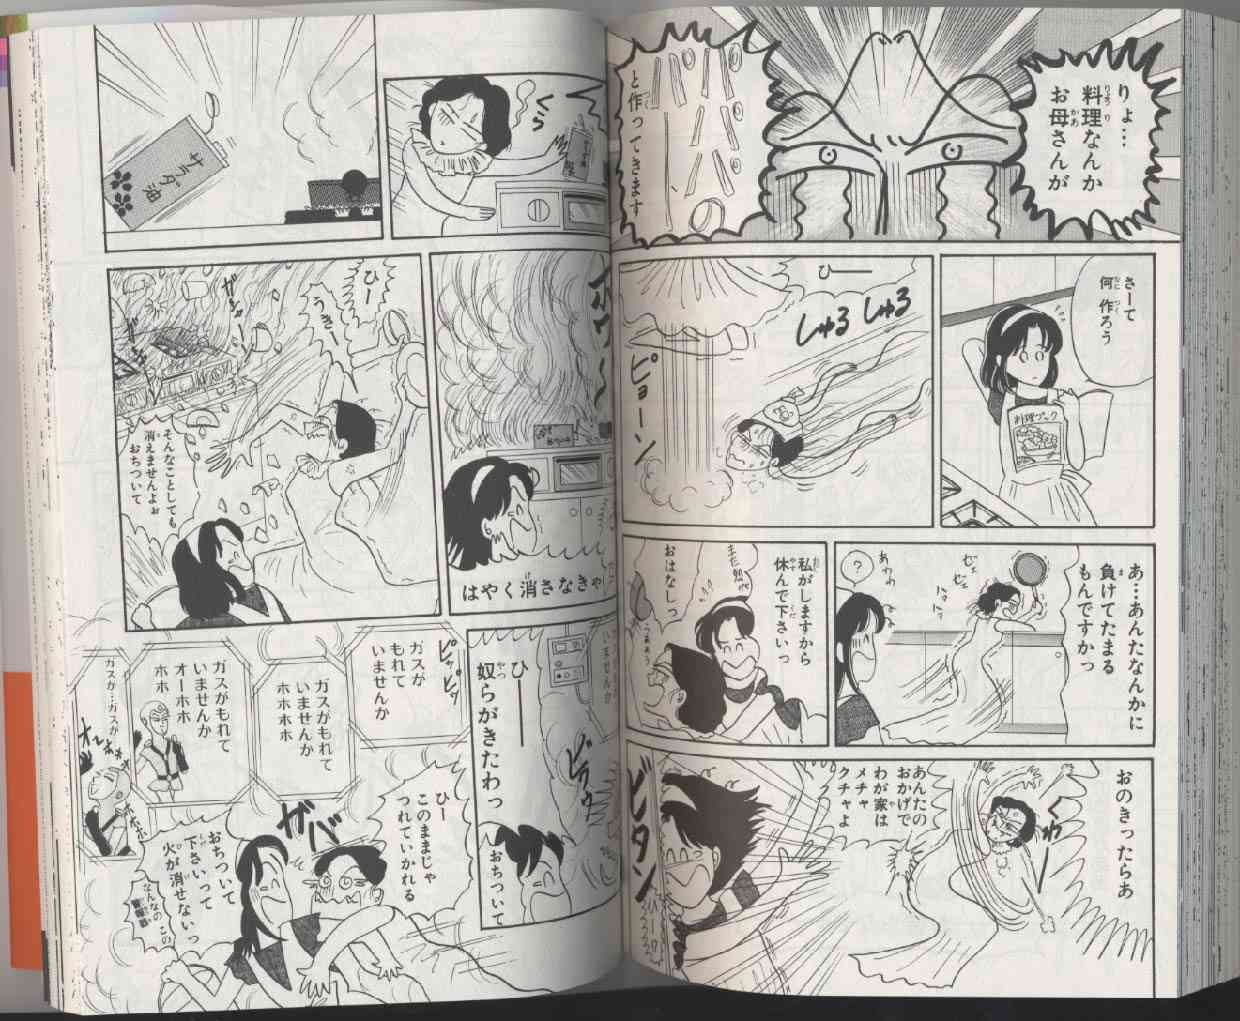 伝説級 ツッコミが追い付かない 漫画家岡田あーみん 2 2 Renote リノート